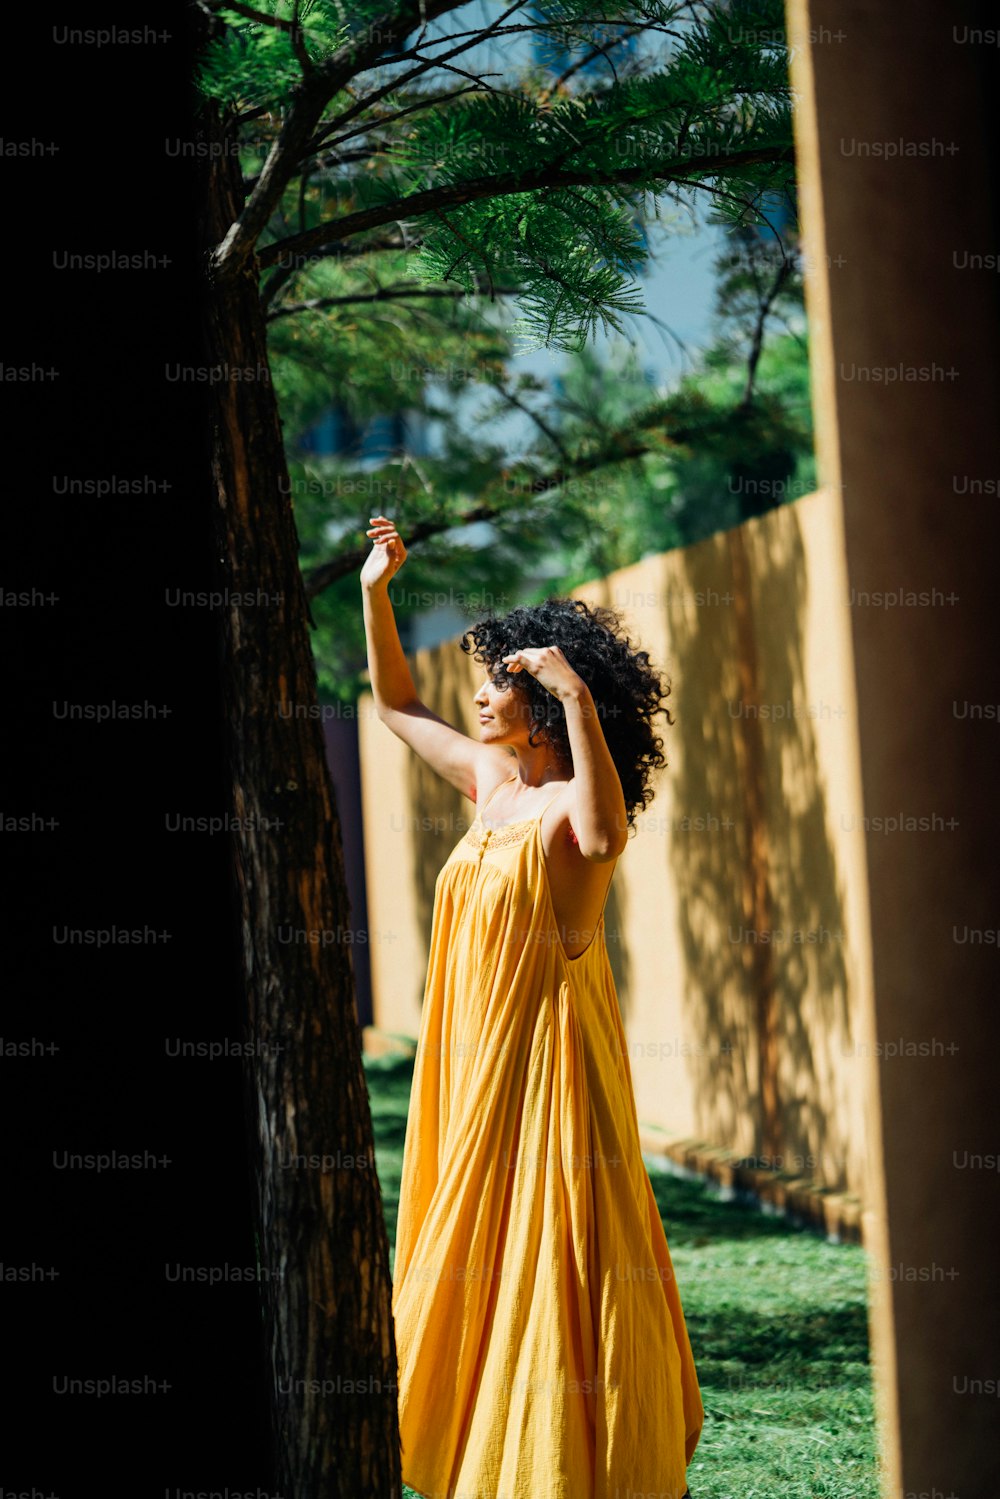 Eine Frau in einem gelben Kleid, die neben einem Baum steht